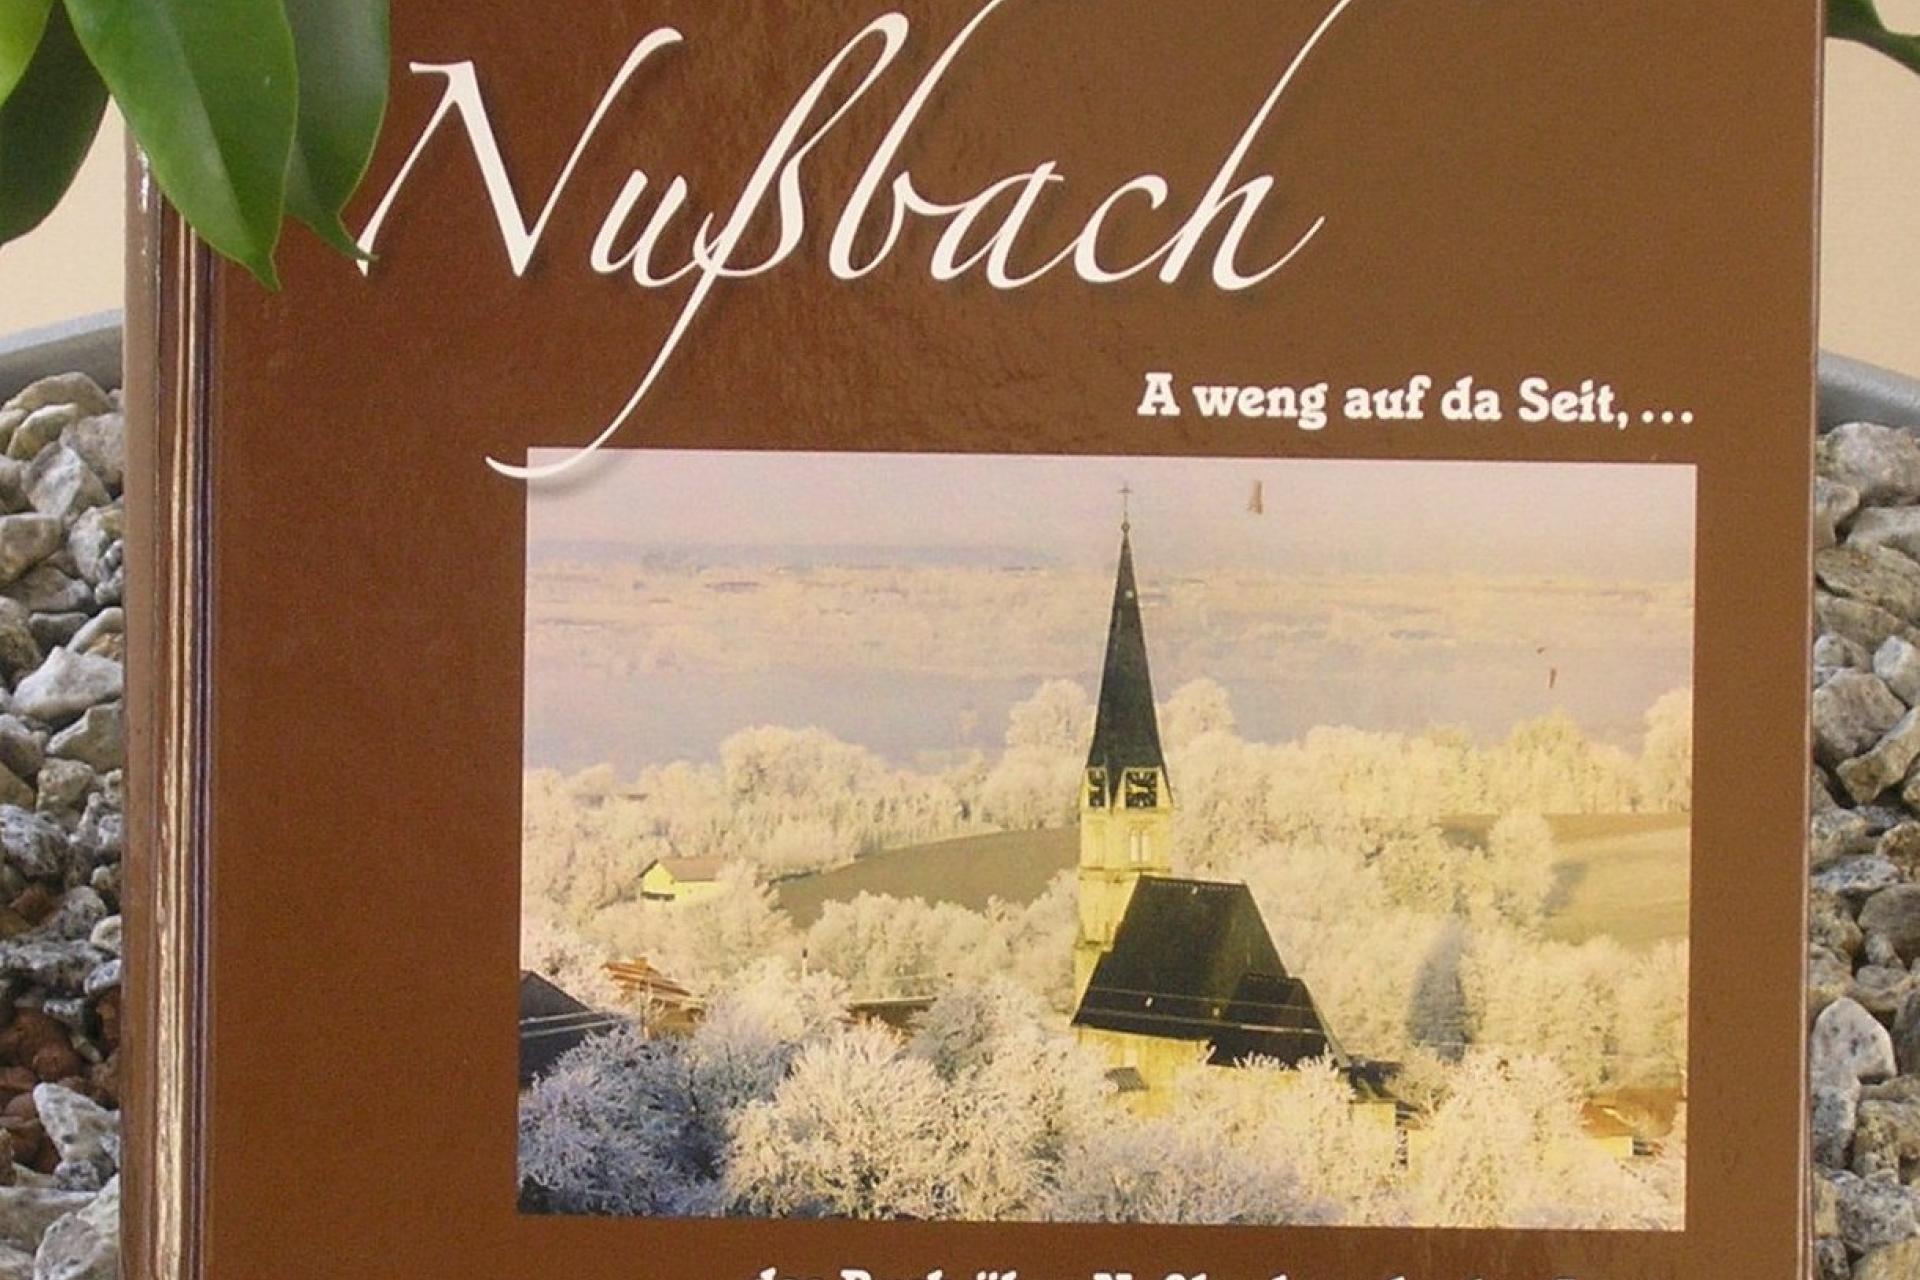 Nußbachbuch "A weng auf da Seit"